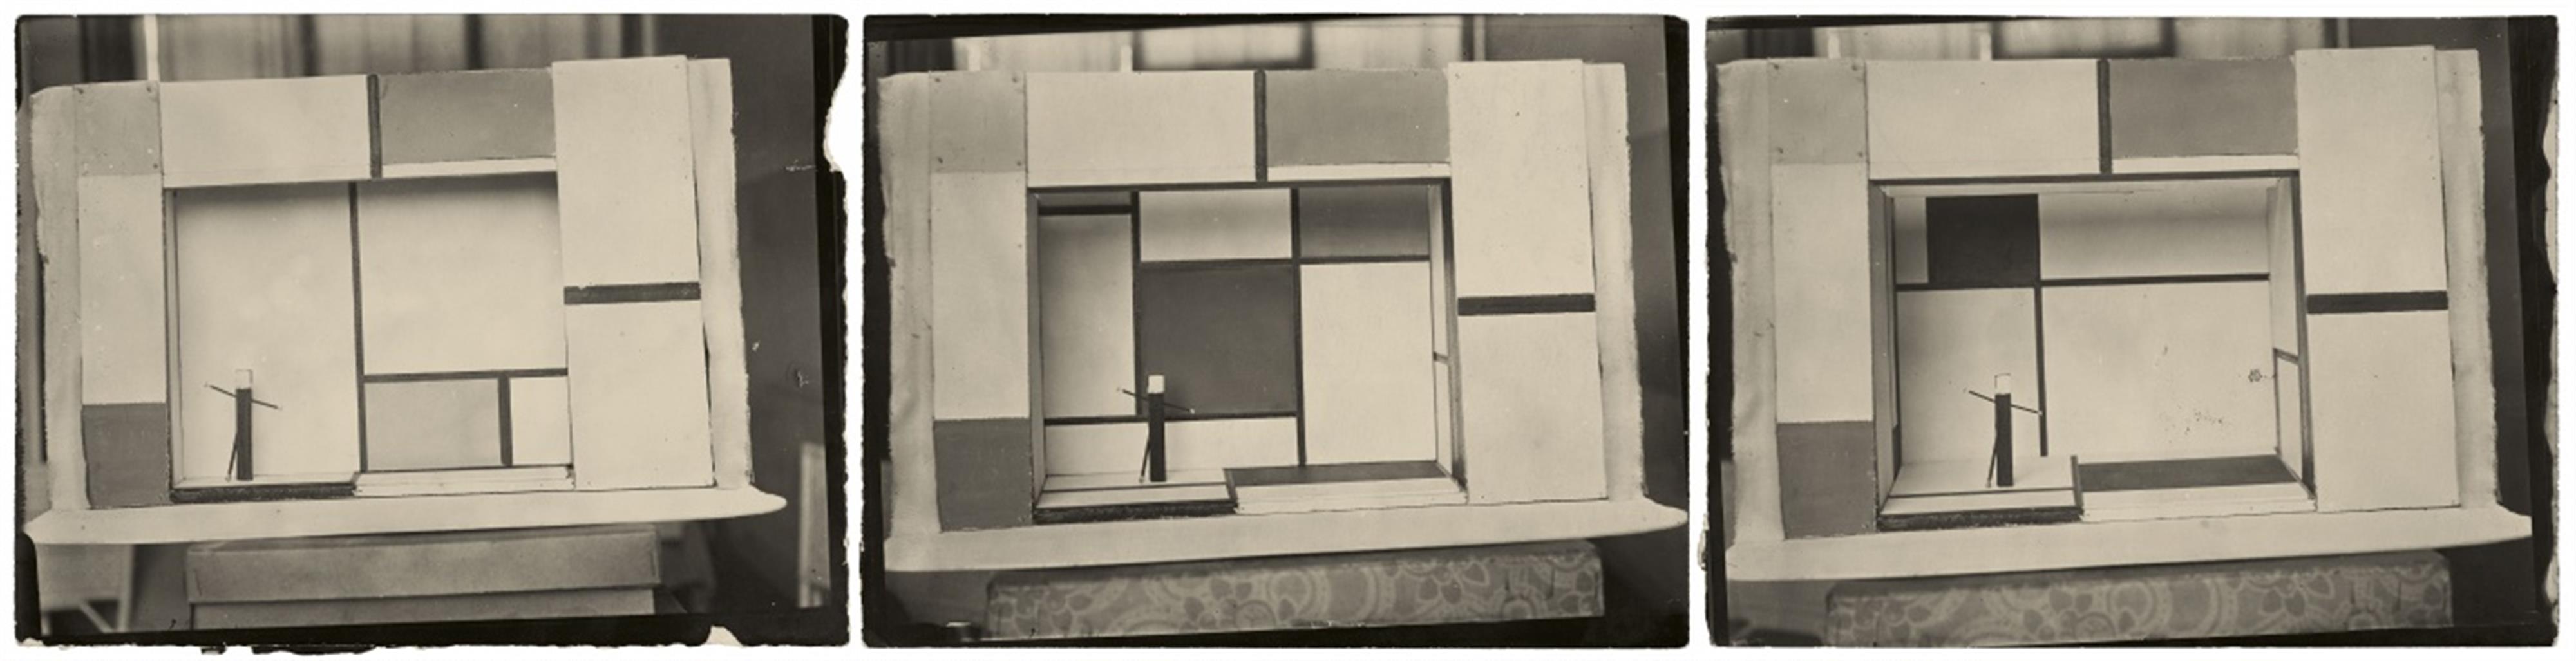 André Kertész - Untitled (Three stage sets designed by Piet Mondrian for 'L'éphémère est )éternel' - image-4